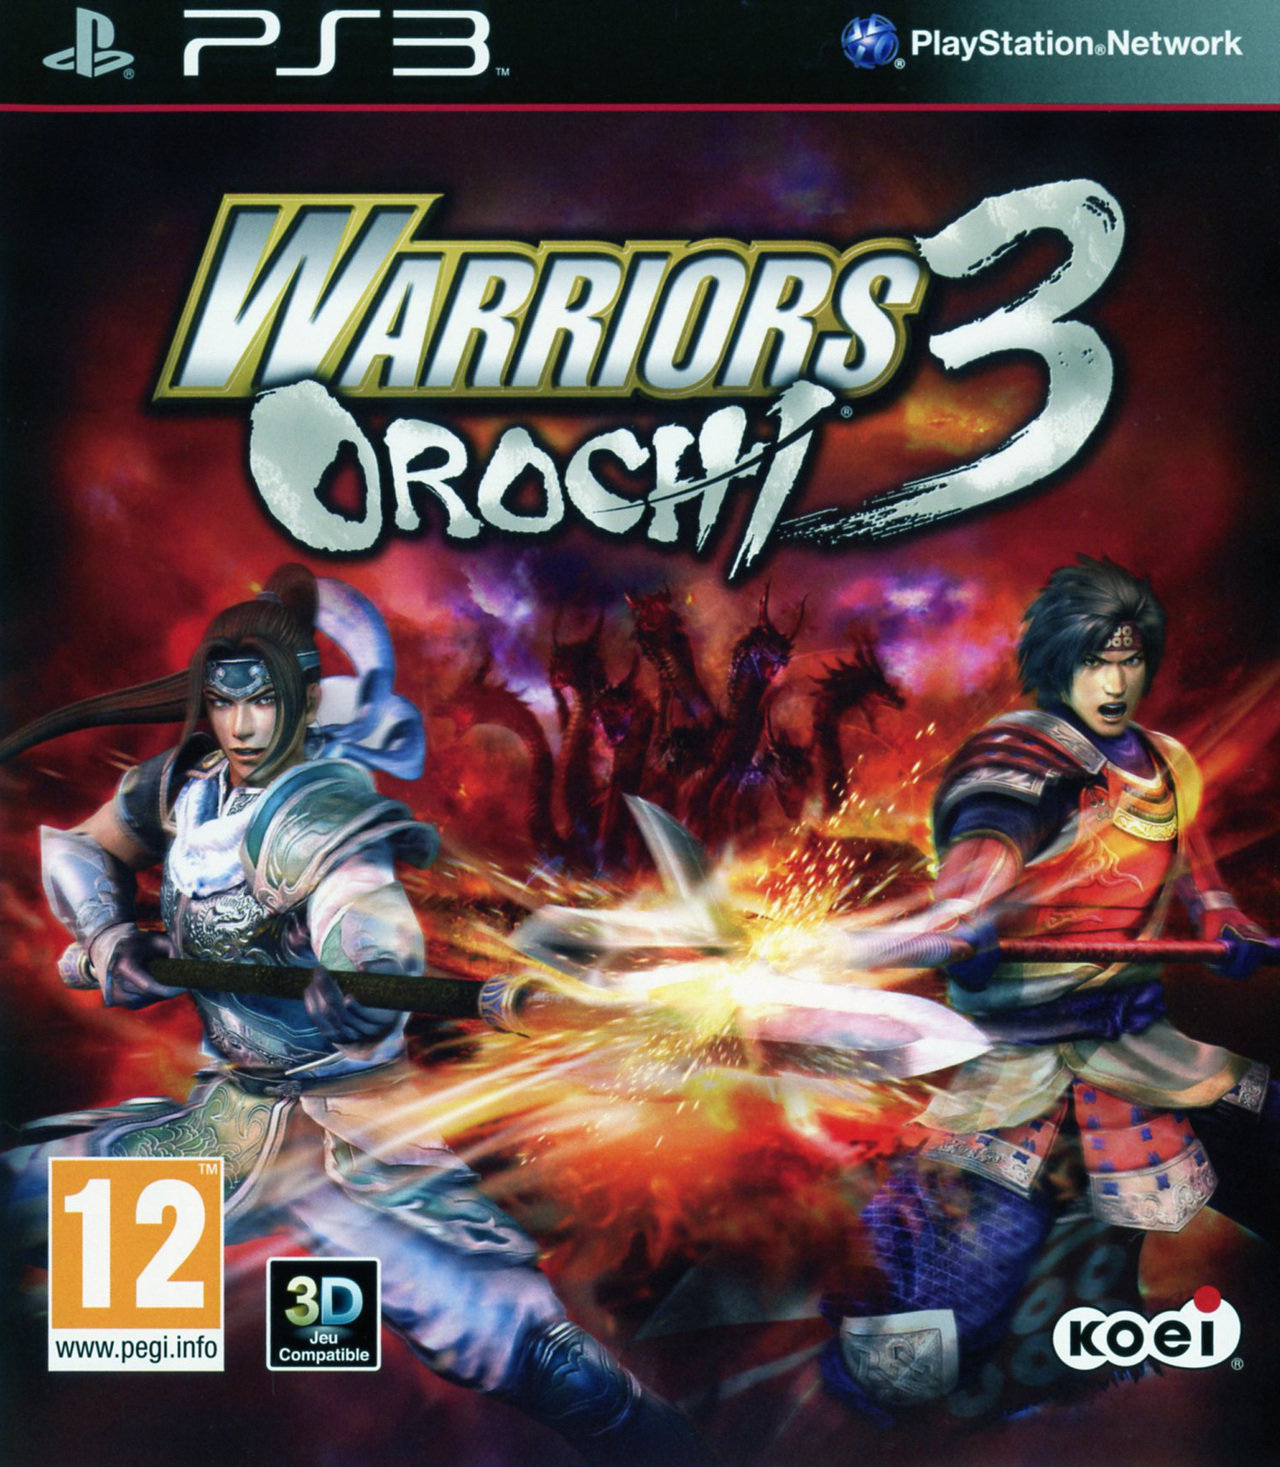 jaquette du jeu vidéo Warriors Orochi 3